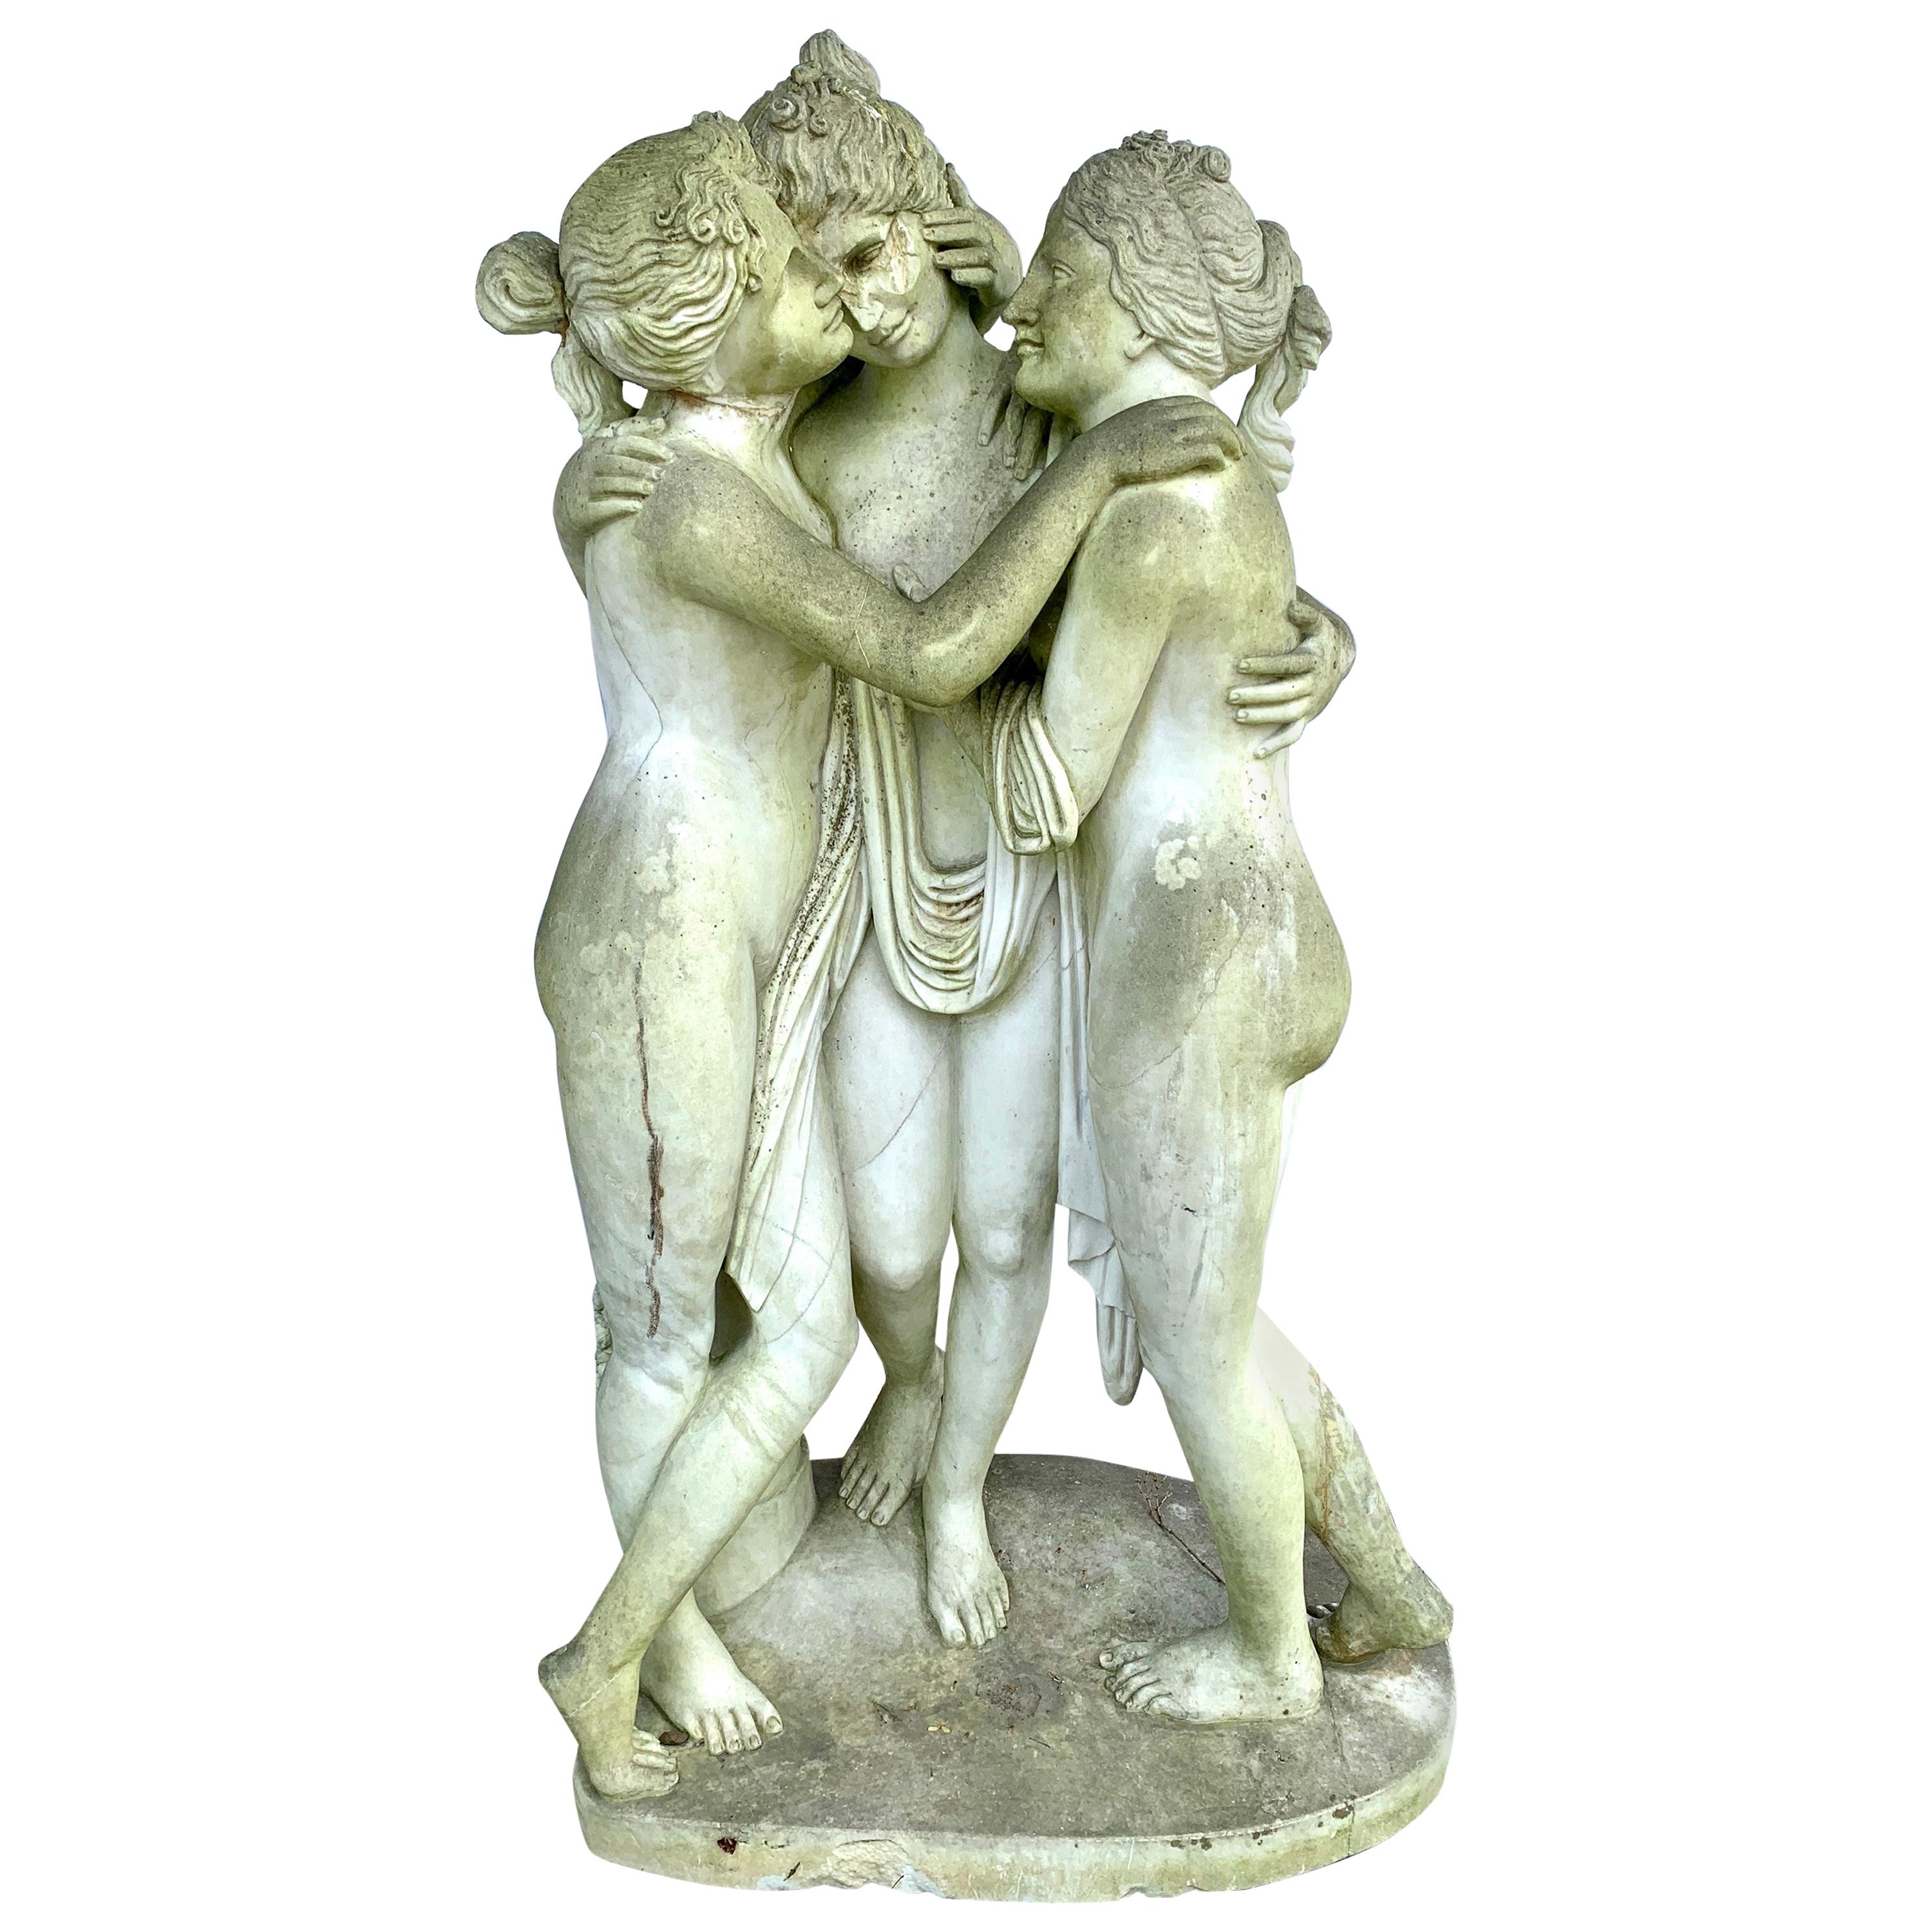 Skulptur der drei Grazien Nymphen, griechische Göttinnen, Marmorstatue